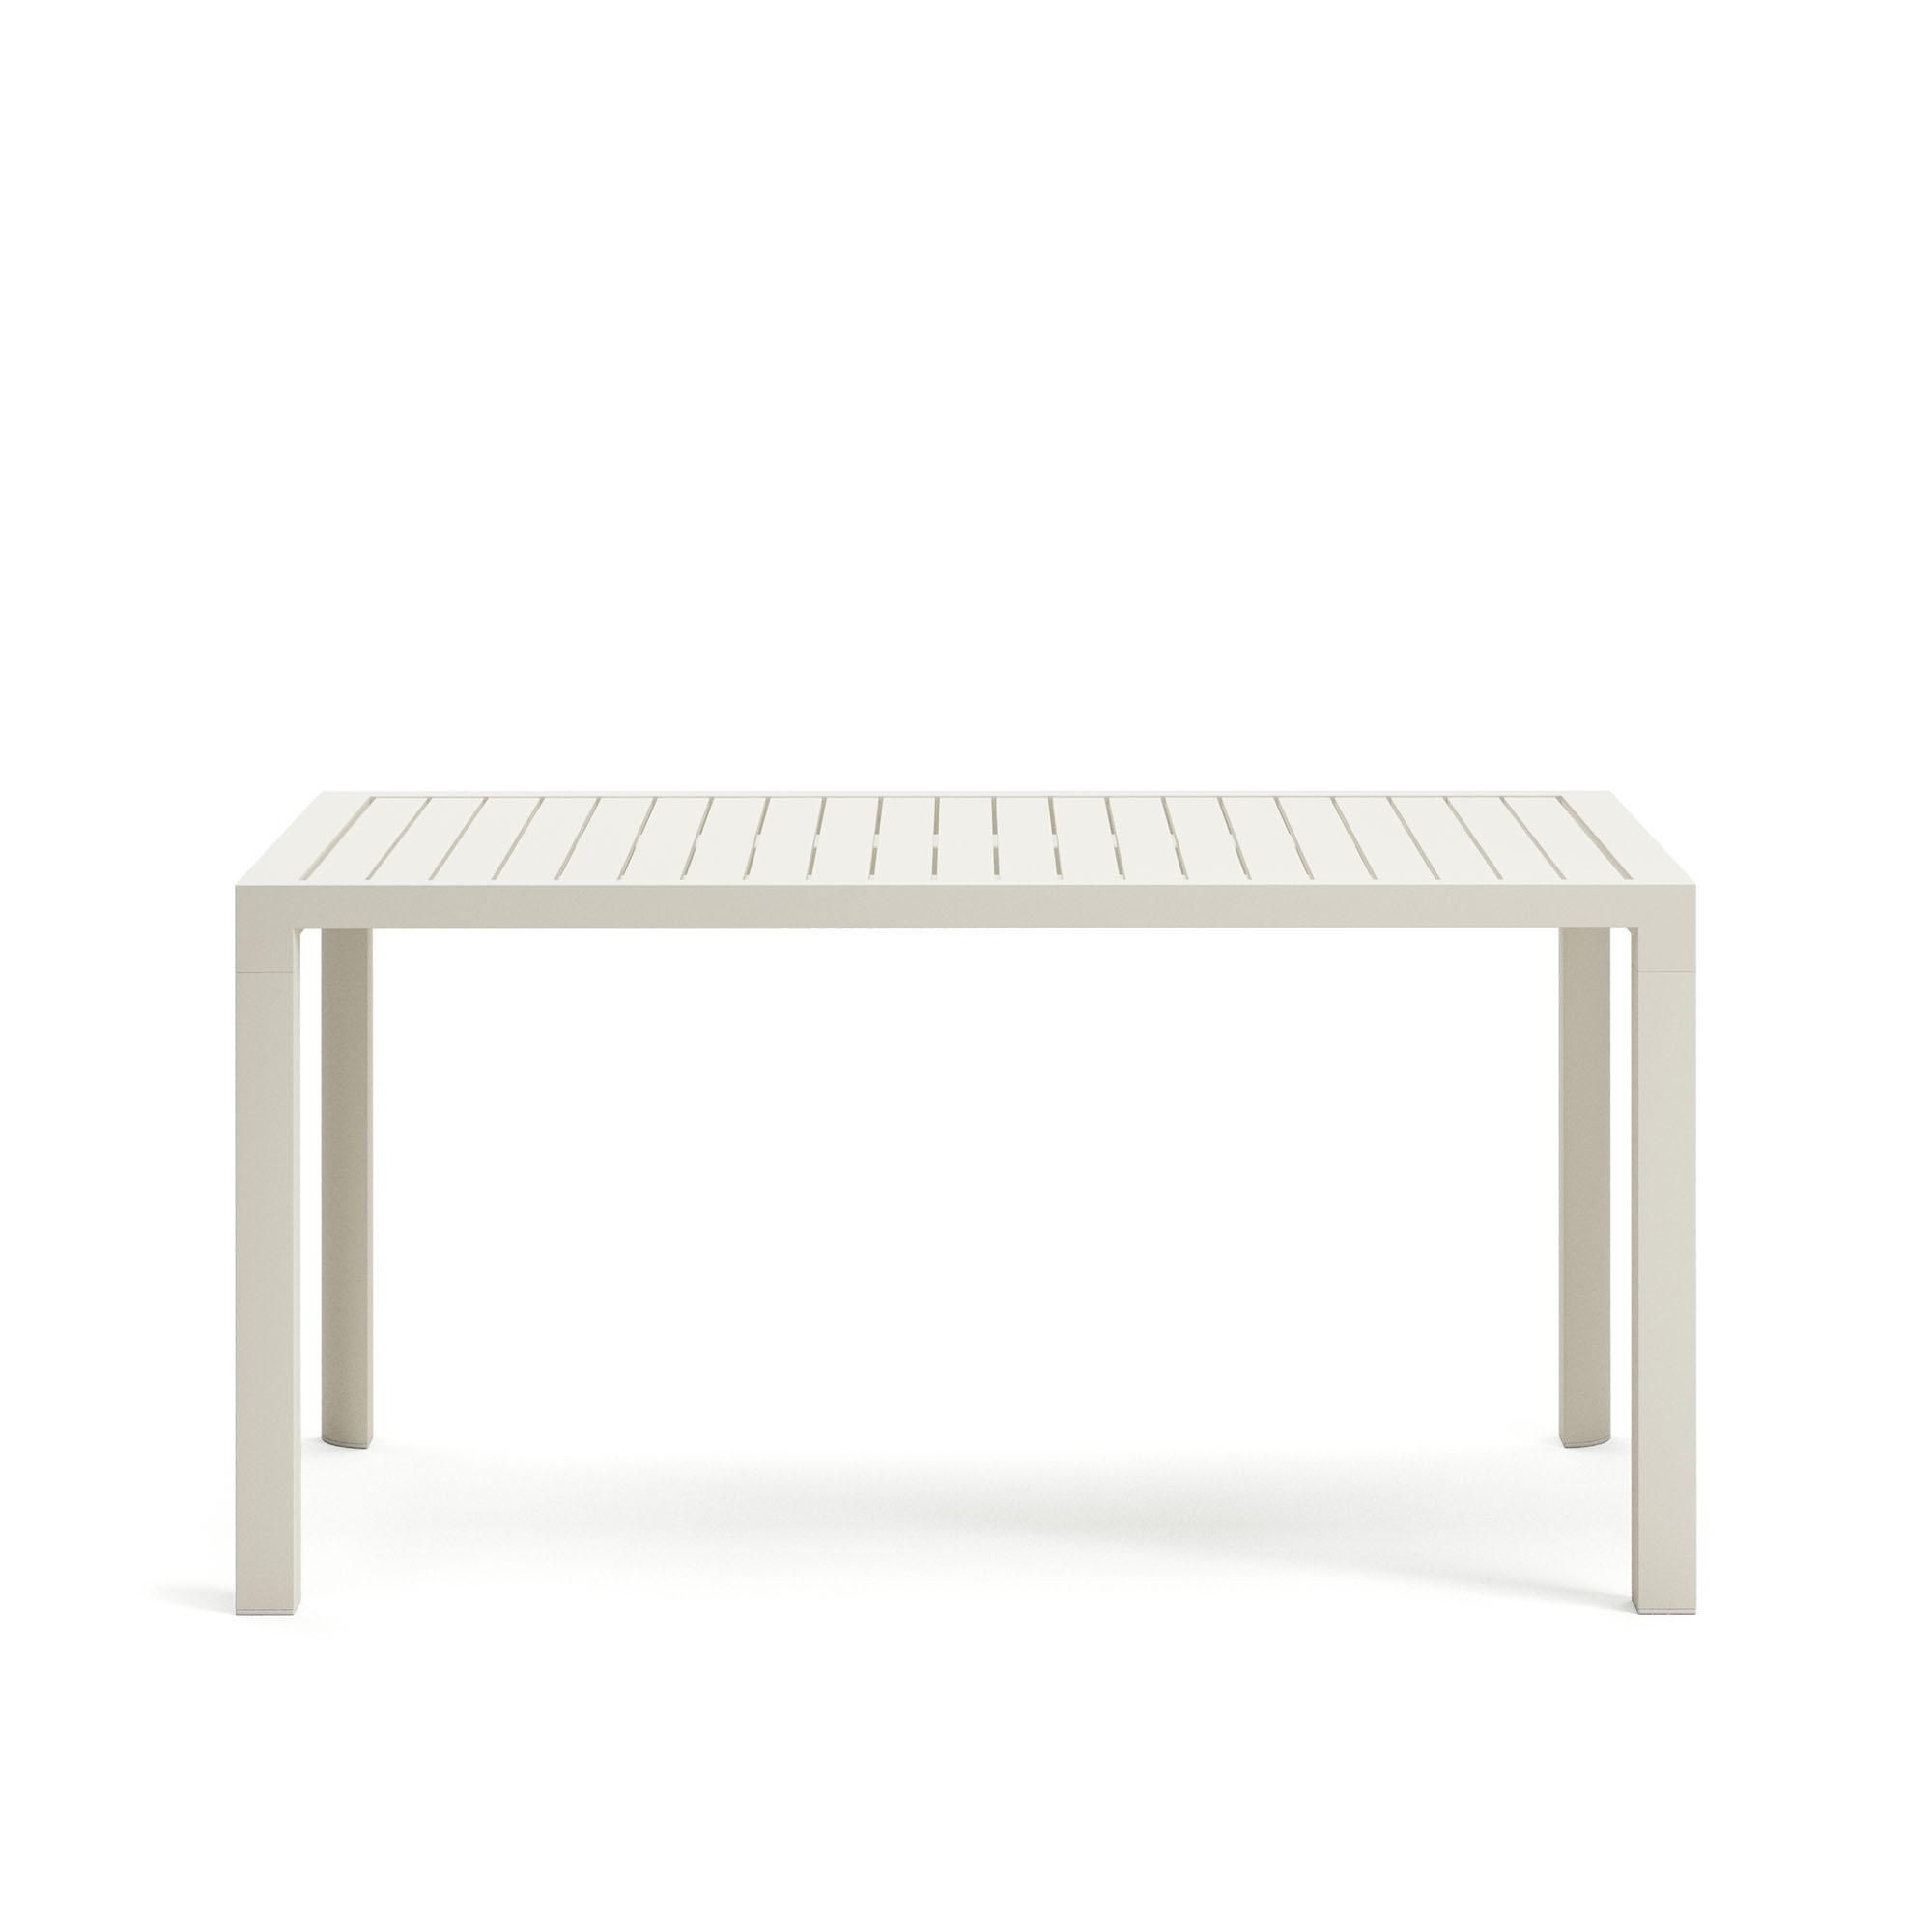 LAFORMA Culip havebord, rektangulær - hvid aluminium (150x77)